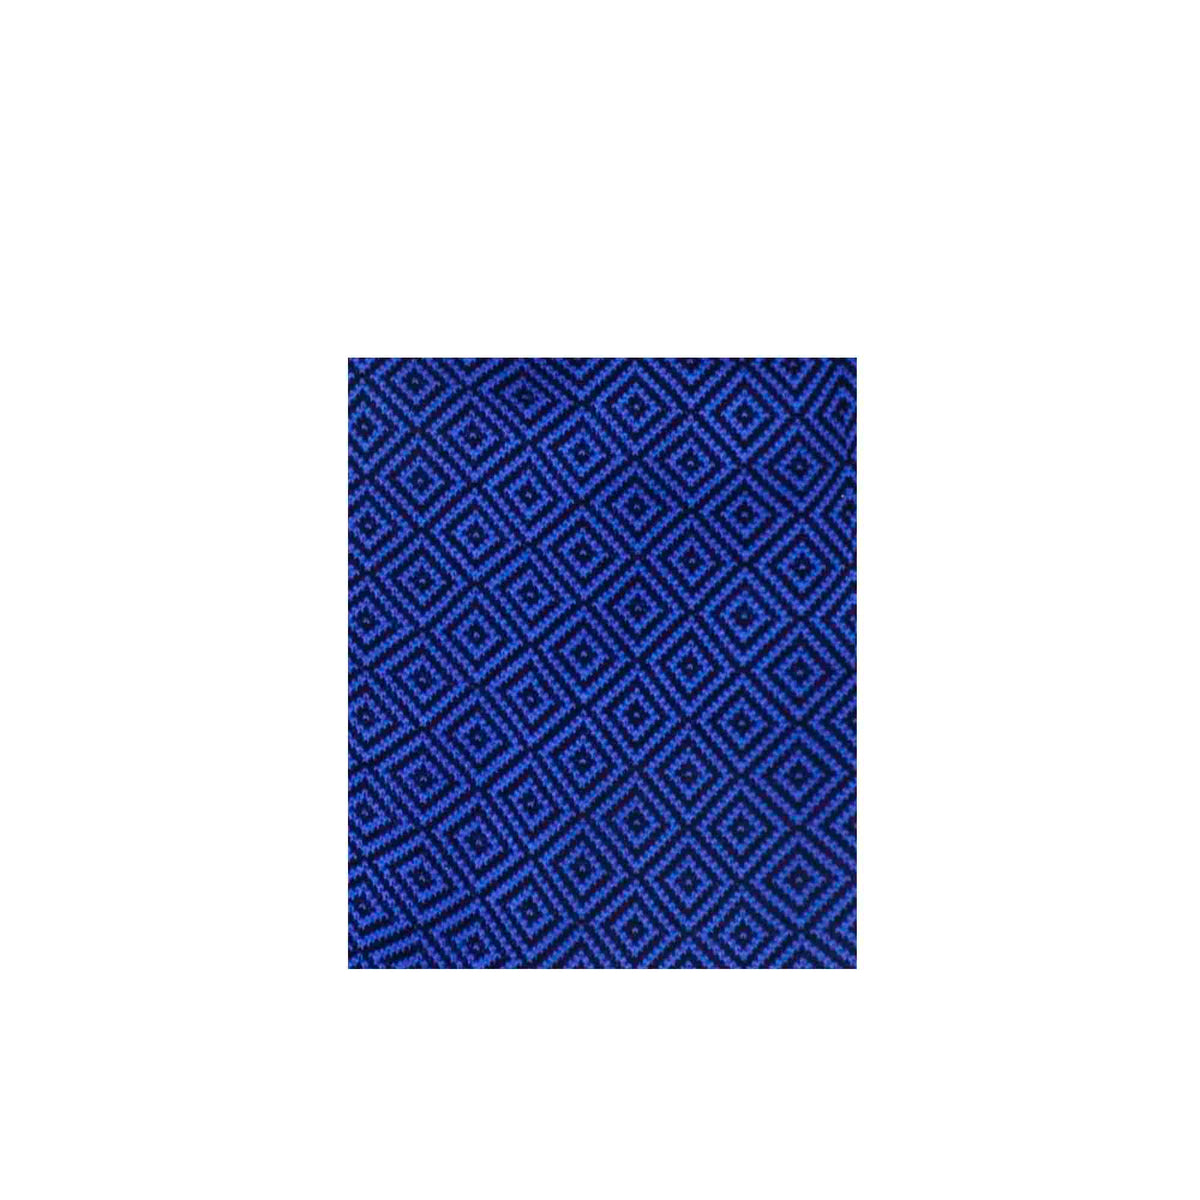 Calzini da uomo in cotone colore blu elettrico con fantasia colore nero